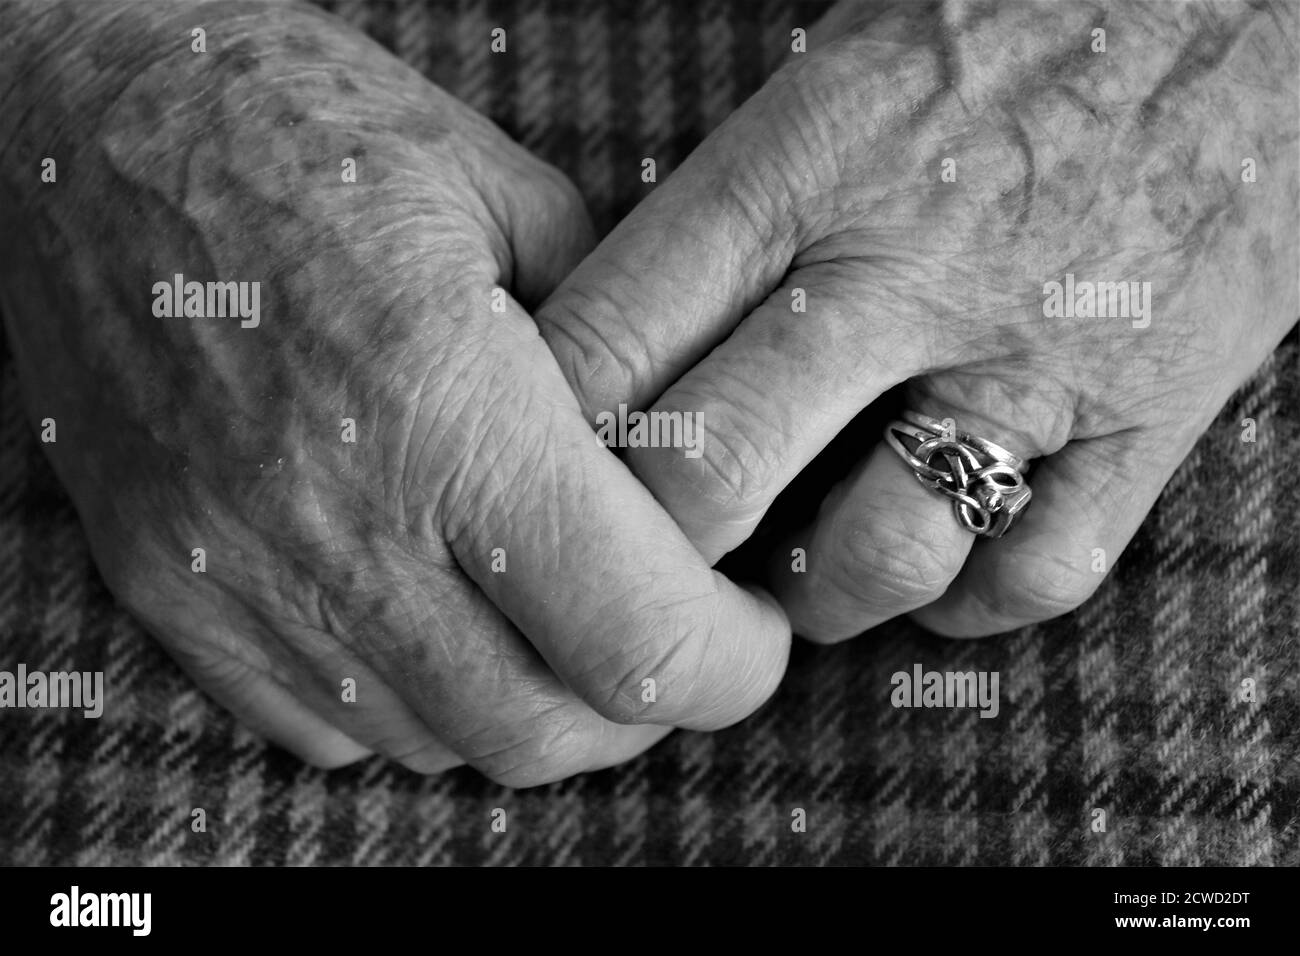 Nahaufnahme der alten Dame Hände geklammt zeigt Finger und Hochzeit und  Verlobungsring mit faltigen weiblichen Fleisch und braun Altersflecken  entspannt sitzen Stockfotografie - Alamy